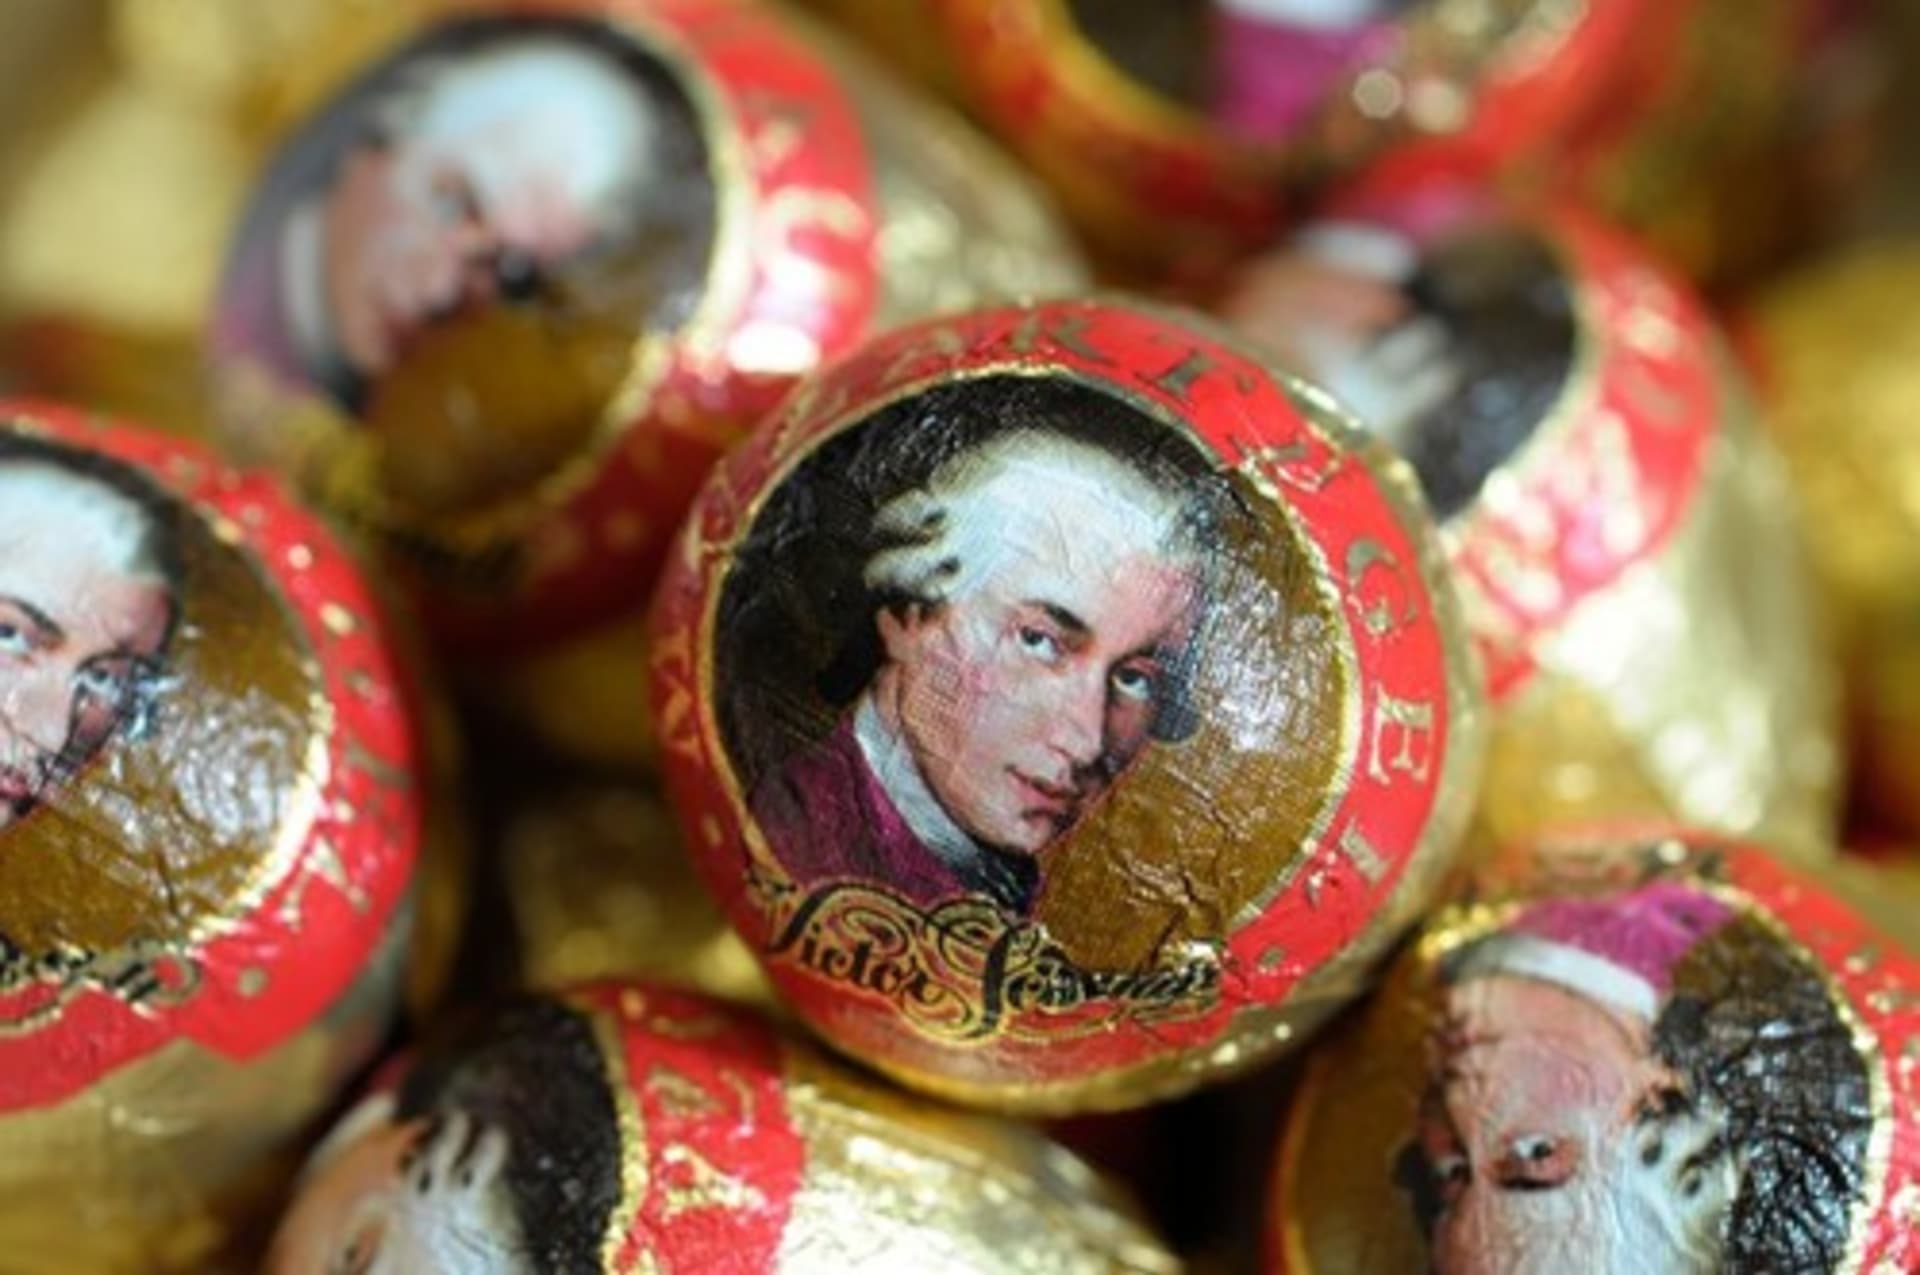 Firma vyrábějící Mozartovy koule je v úpadku. 